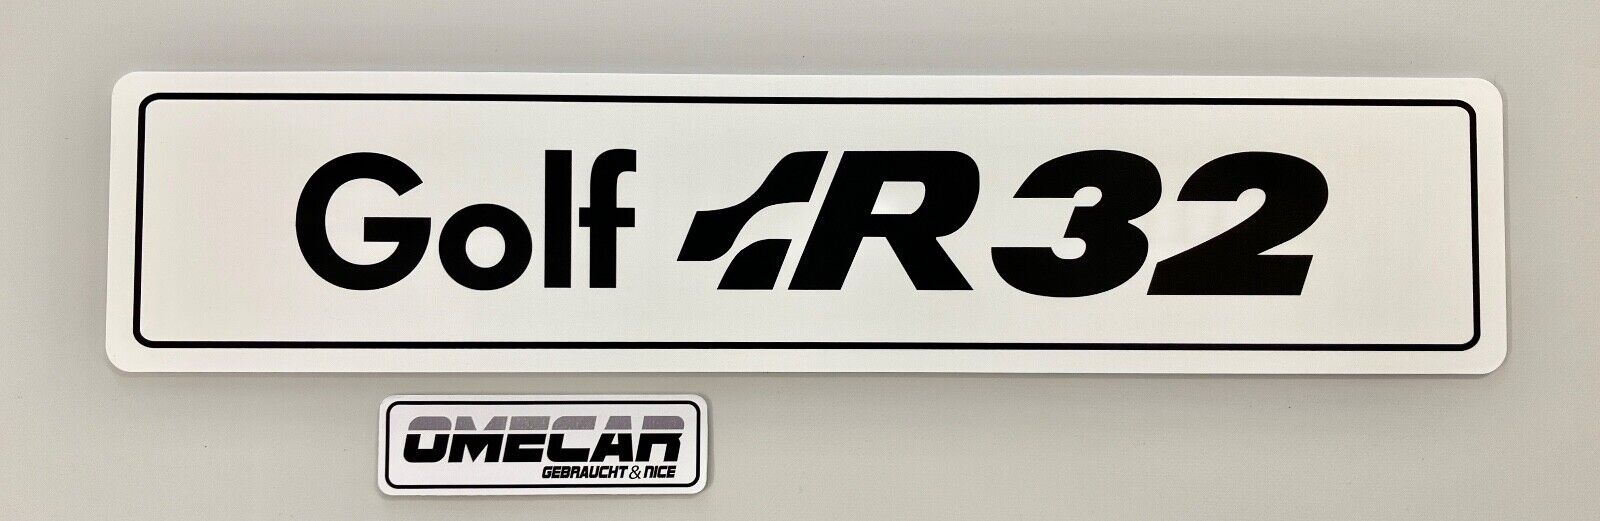 Schriftzug Nummernschild Kennzeichen Show & Shine Ausstellung Logo für Golf  R32 - Ersatzteile in Originalqualität für alle VW Golf 2 Modelle Typ 19E /  MK2 - Lager von Neuteilen und Gebrauchtteilen